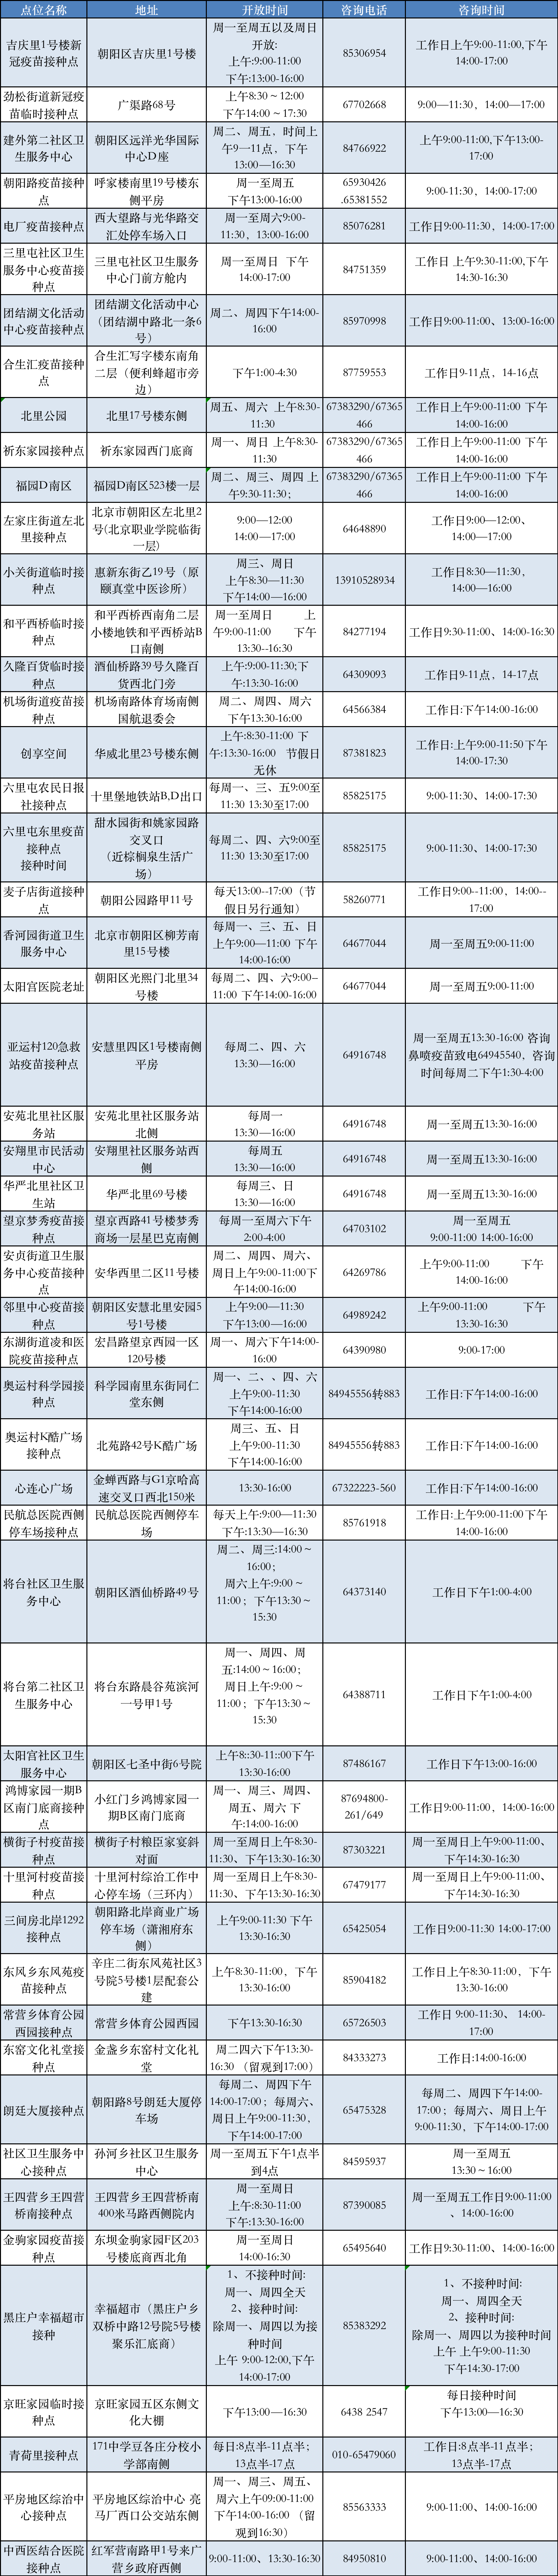 最新！北京朝阳区每日开放疫苗接种点位信息请您查收某种文具的价钱是:五个2元,五十个3元,而五百个、五千个、五万个都是3元,但是五十2022已更新(今日/新华网)